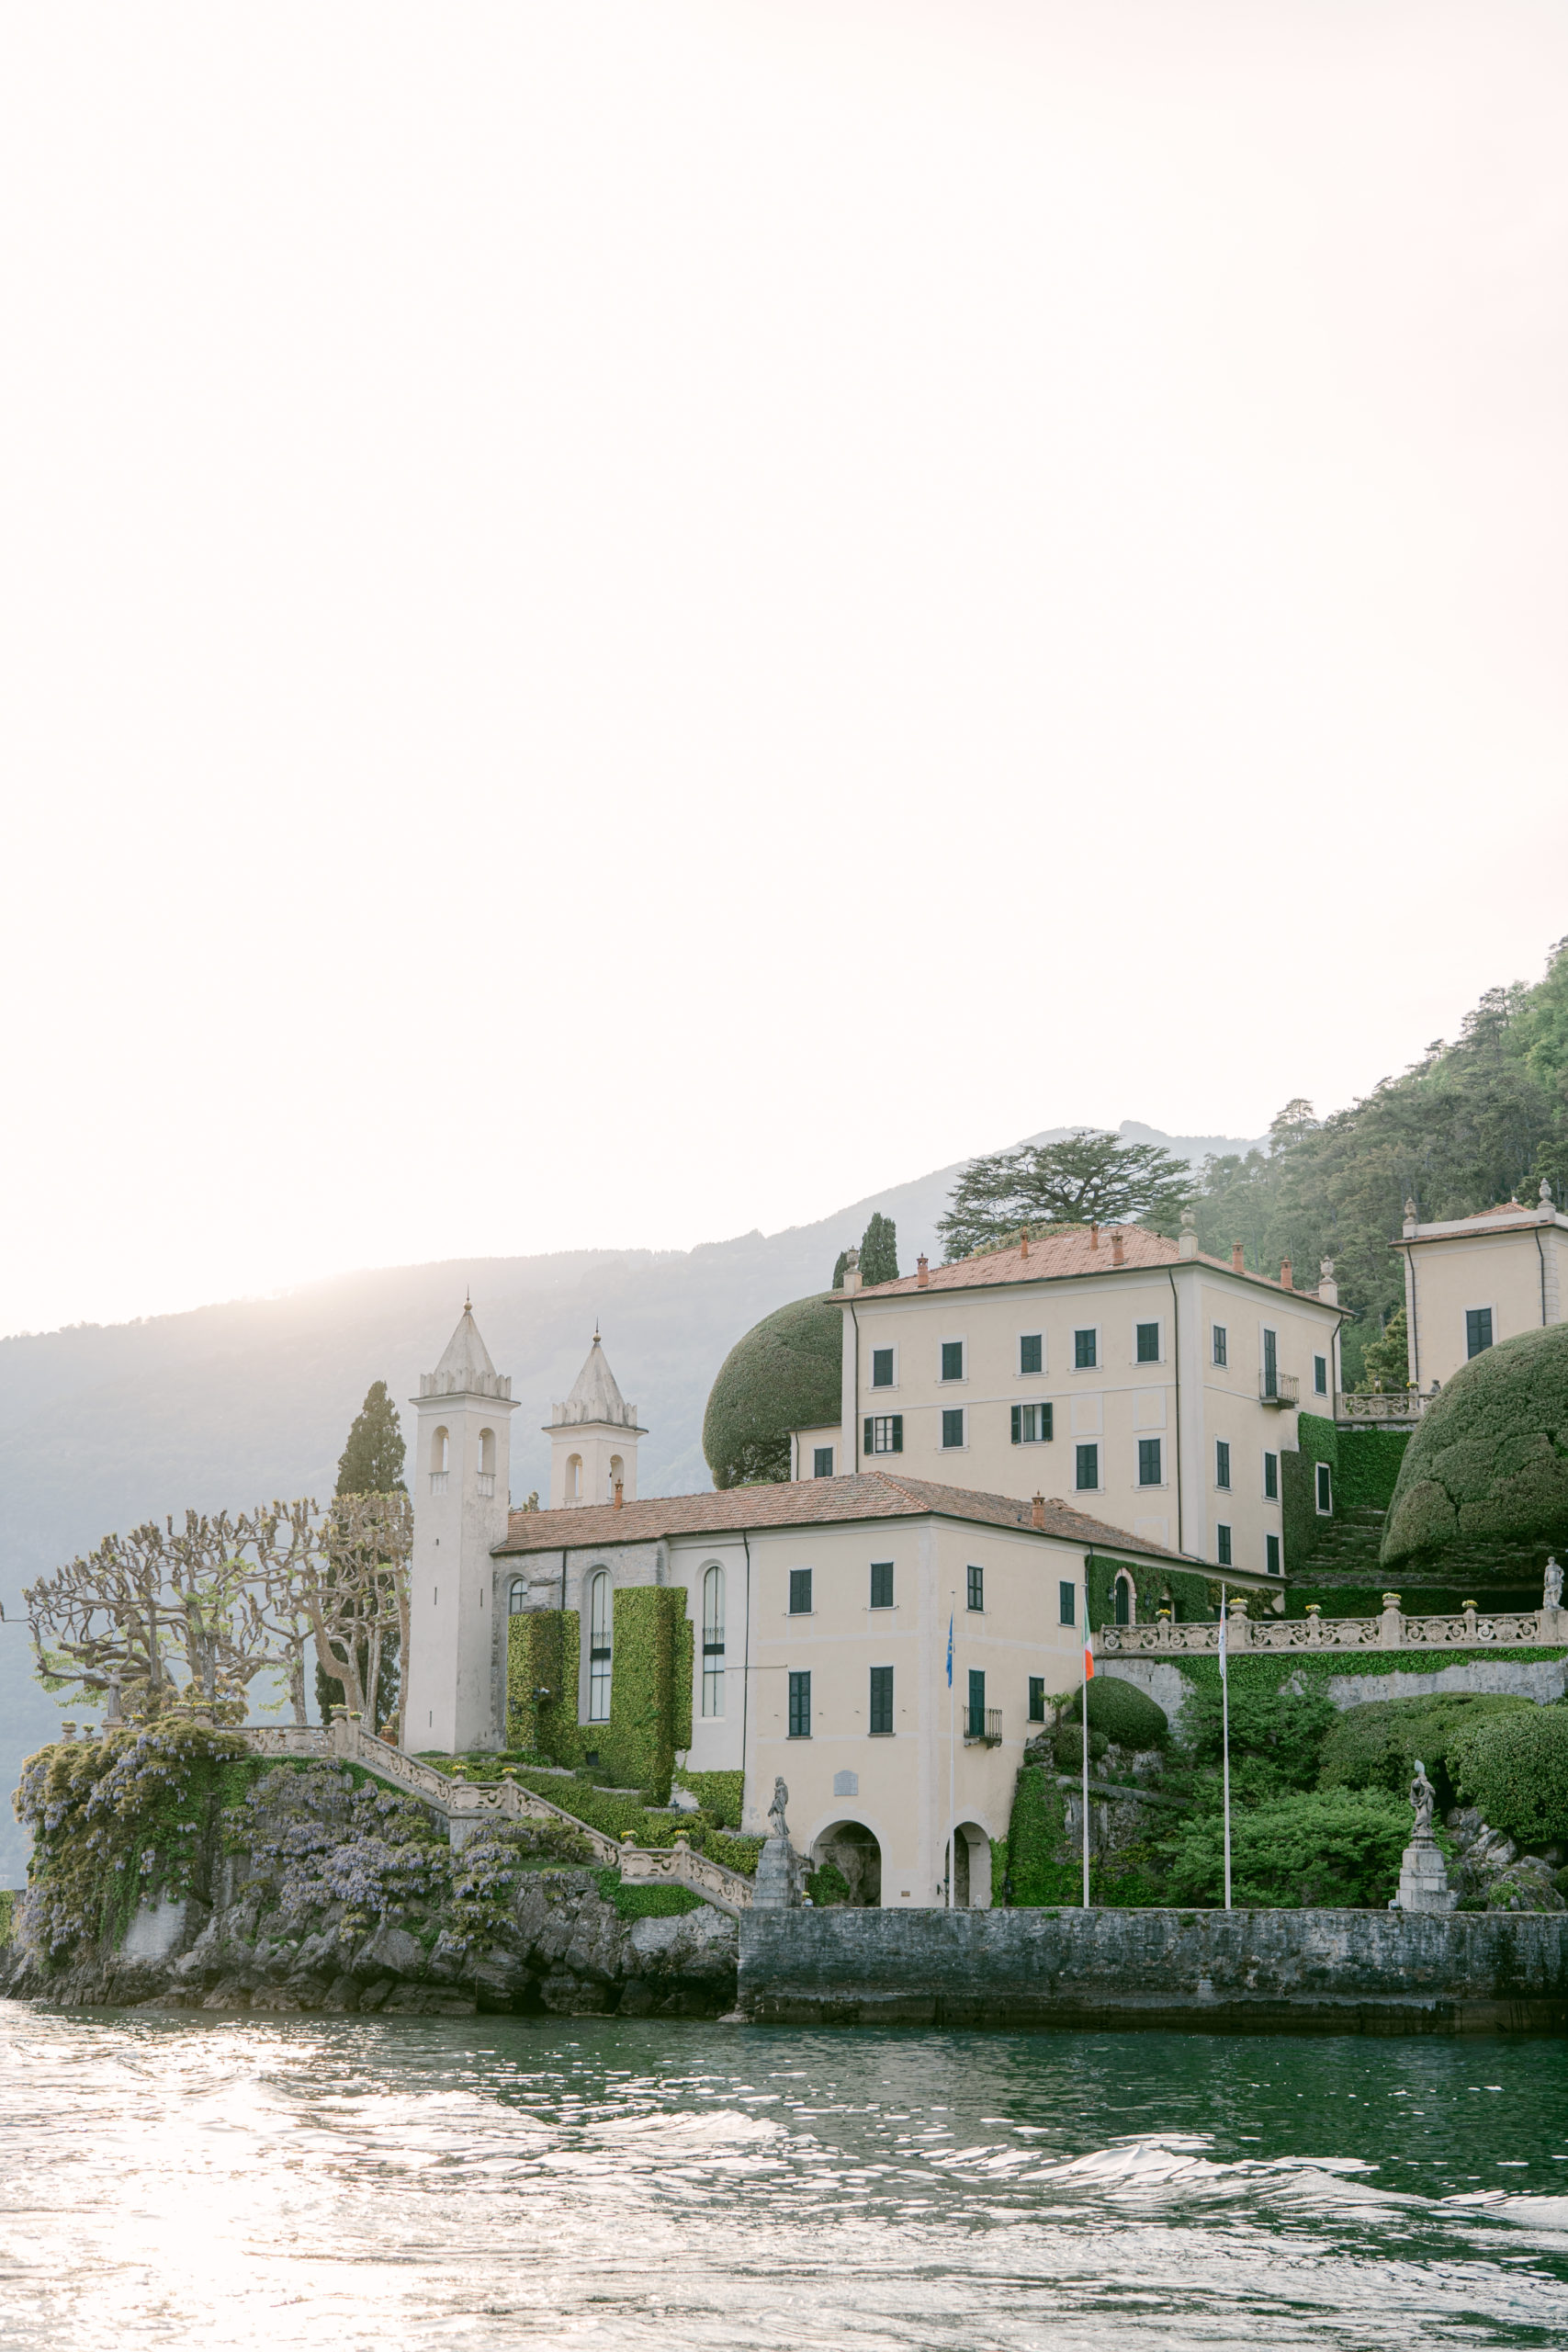 Lake Como italy wedding venue, villa balbianello